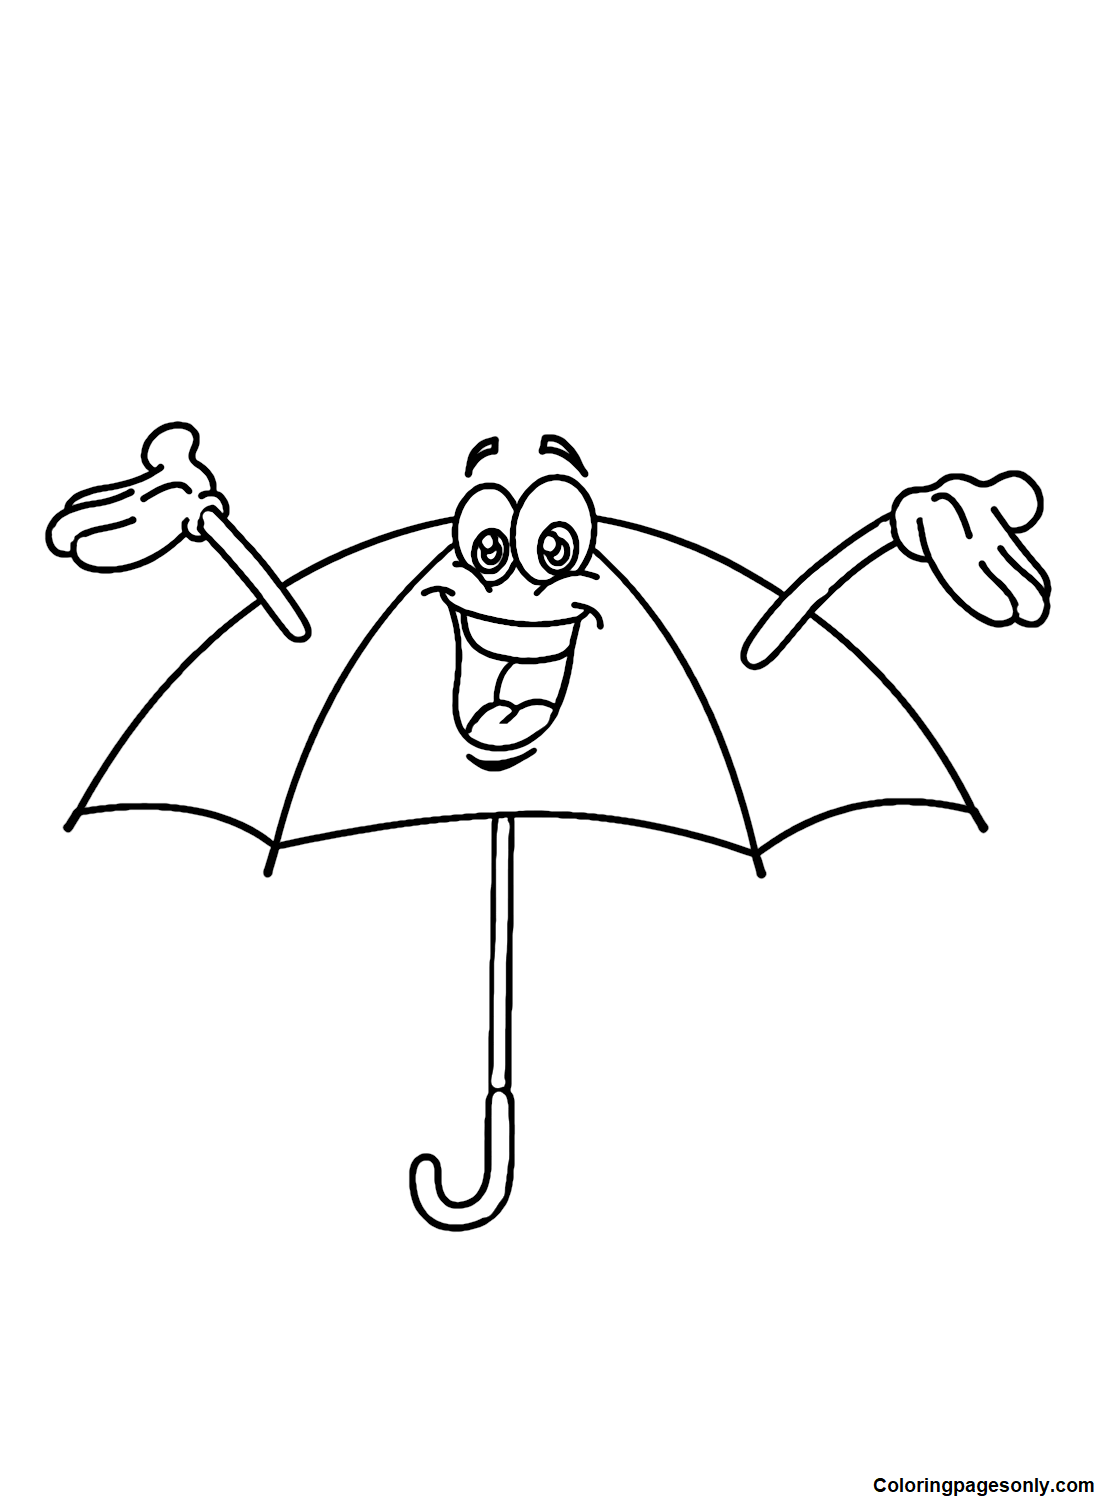 Guarda-chuva de desenho animado da Umbrella